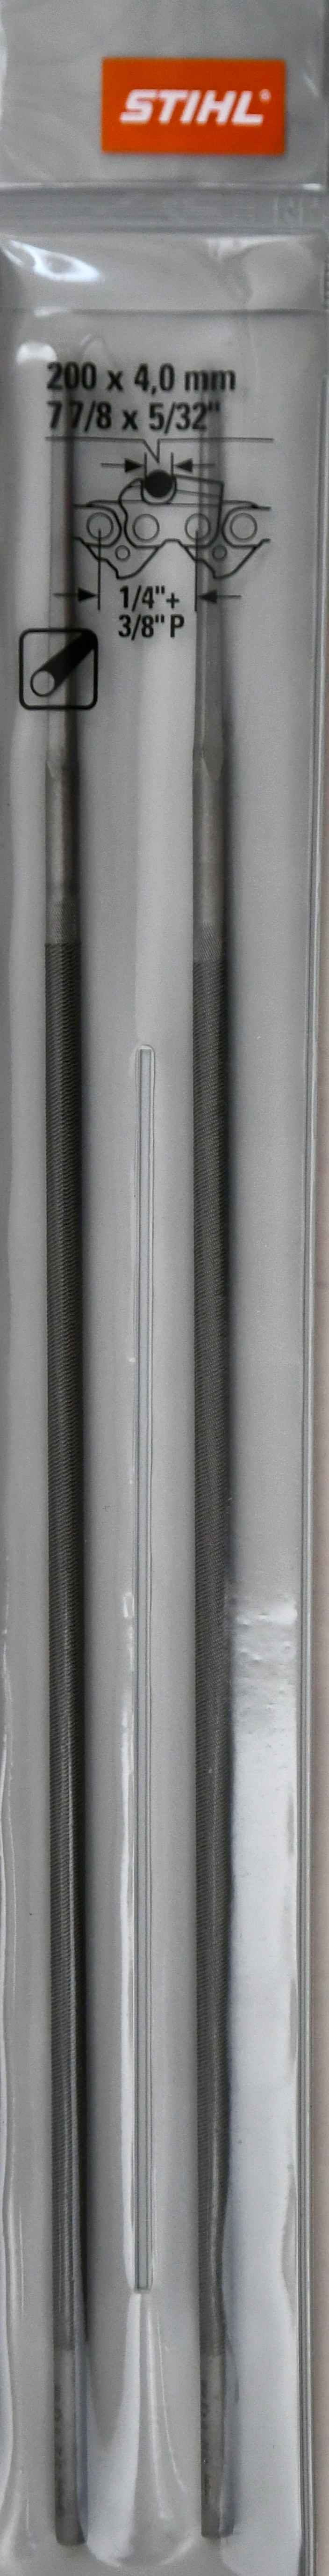 Stihl 56057724002 original Rundfeile Ø 4,00 mm x 200 mm 2 Stück Packung für  1/4" und 3/8" Ketten Feilenhalter 2-in-1